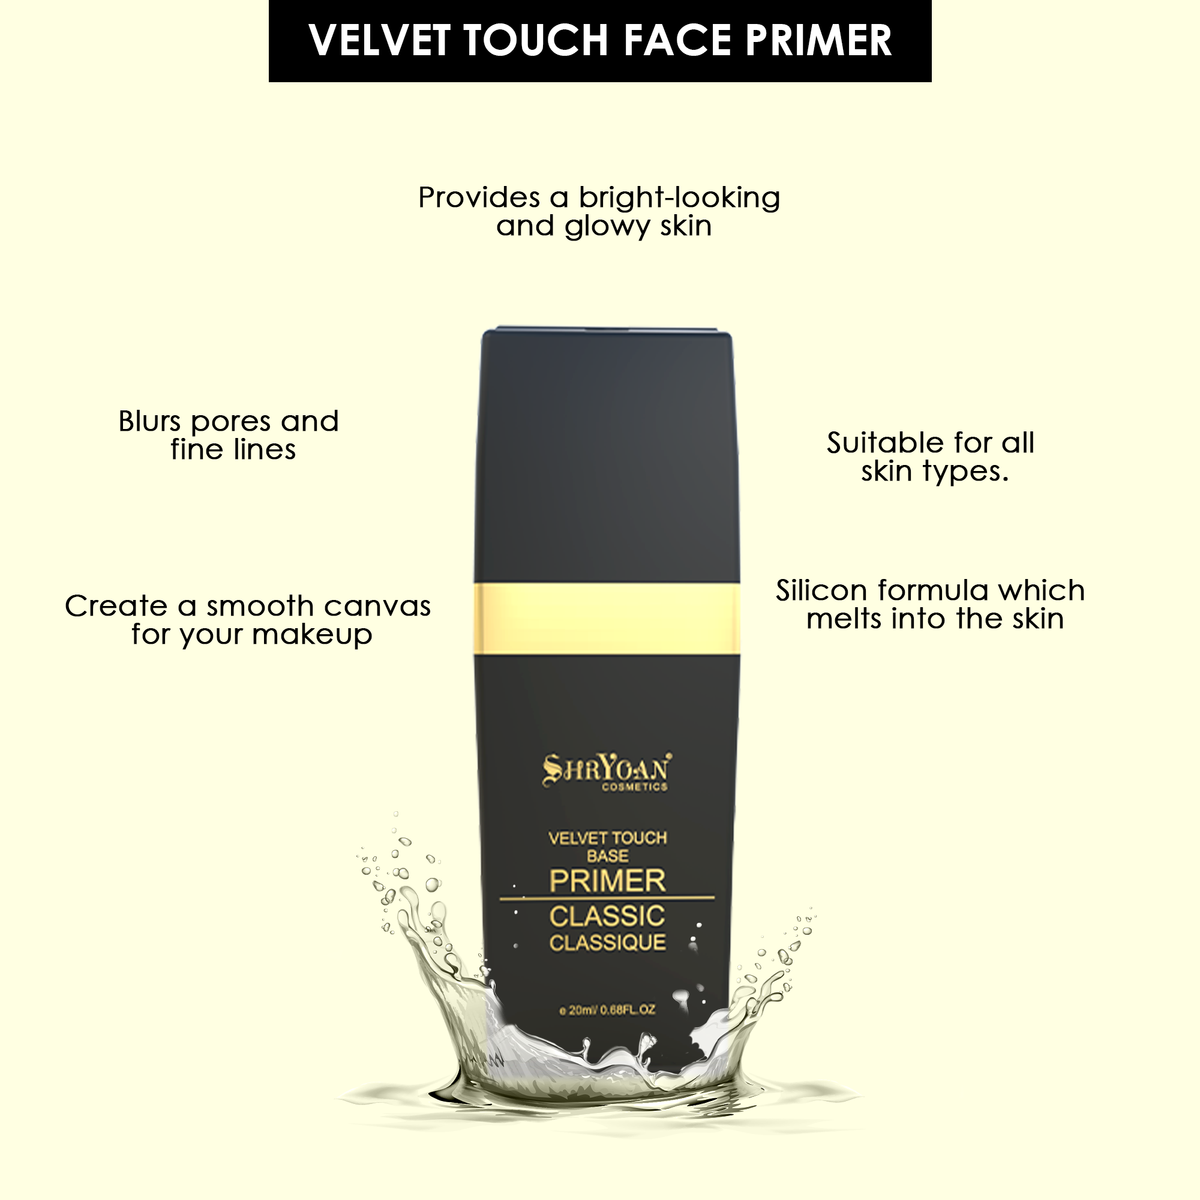 Velvet Touch Classic Face Primer